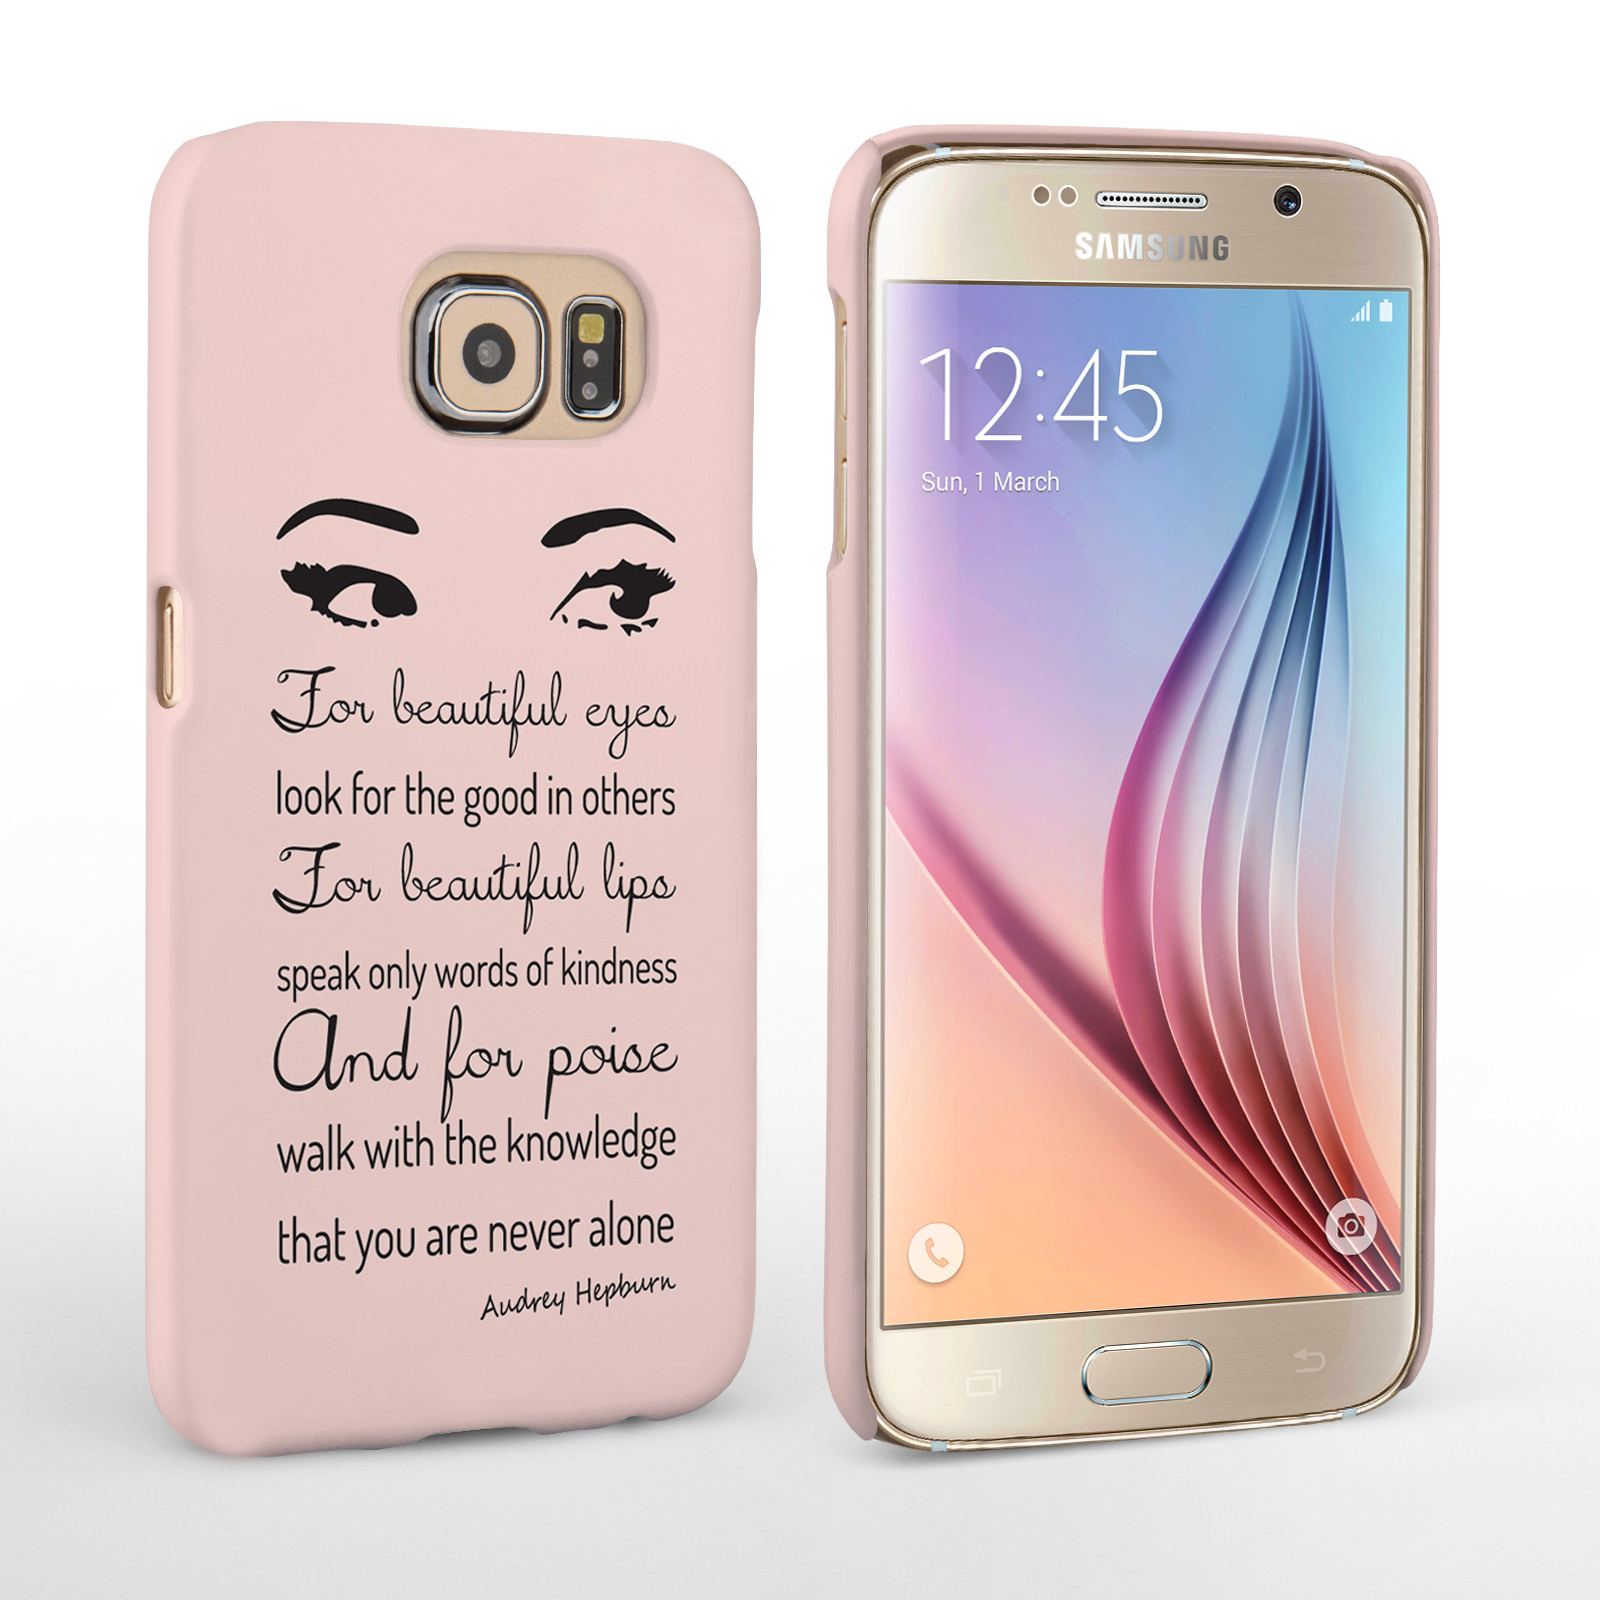 Caseflex Samsung Galaxy S6 Audrey Hepburn ‘Eyes’ Quote Case